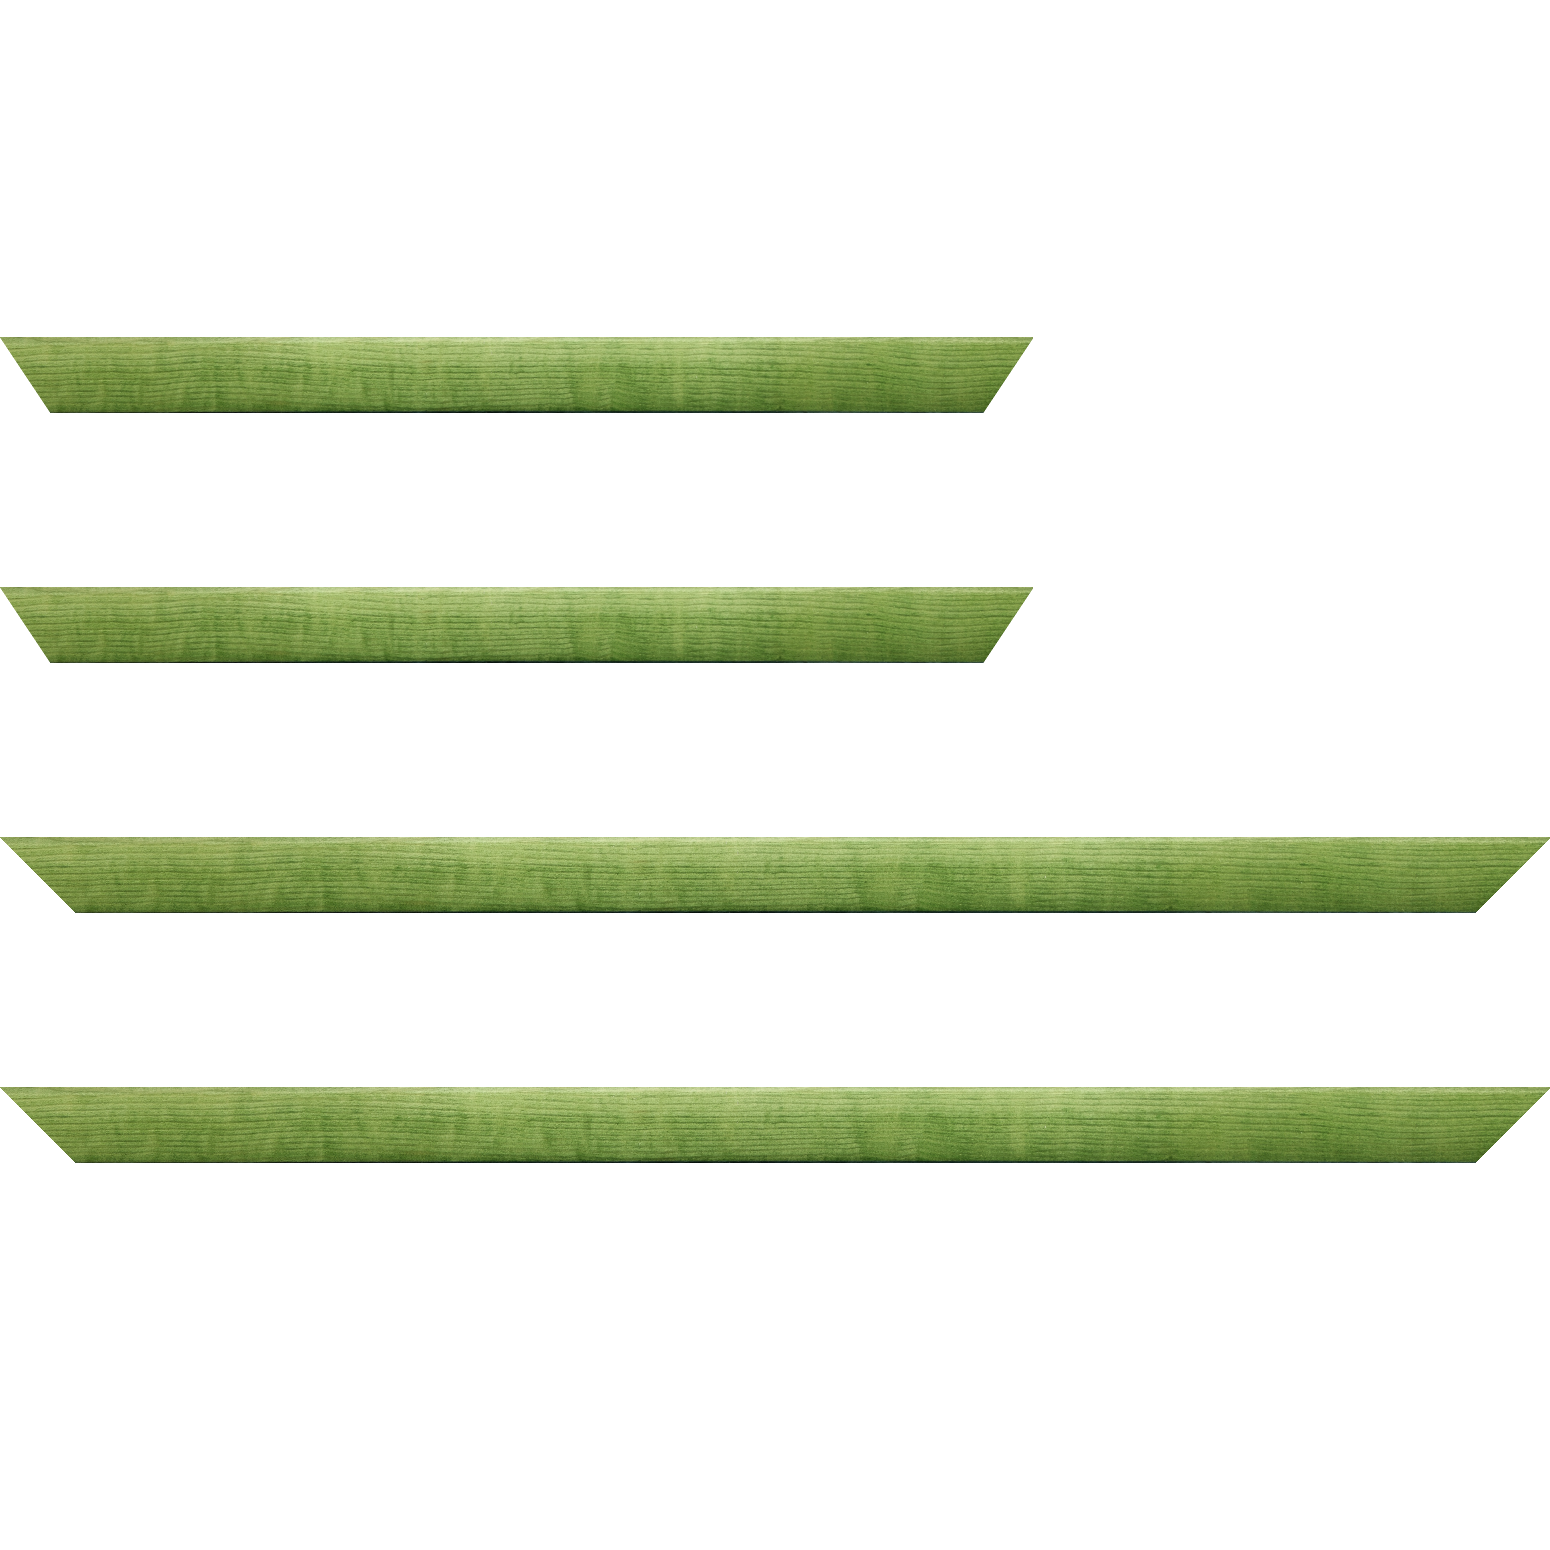 Baguette bois profil arrondi en pente plongeant largeur 2.4cm couleur vert tonique finition vernis brillant,veine du bois  apparent (pin) ,